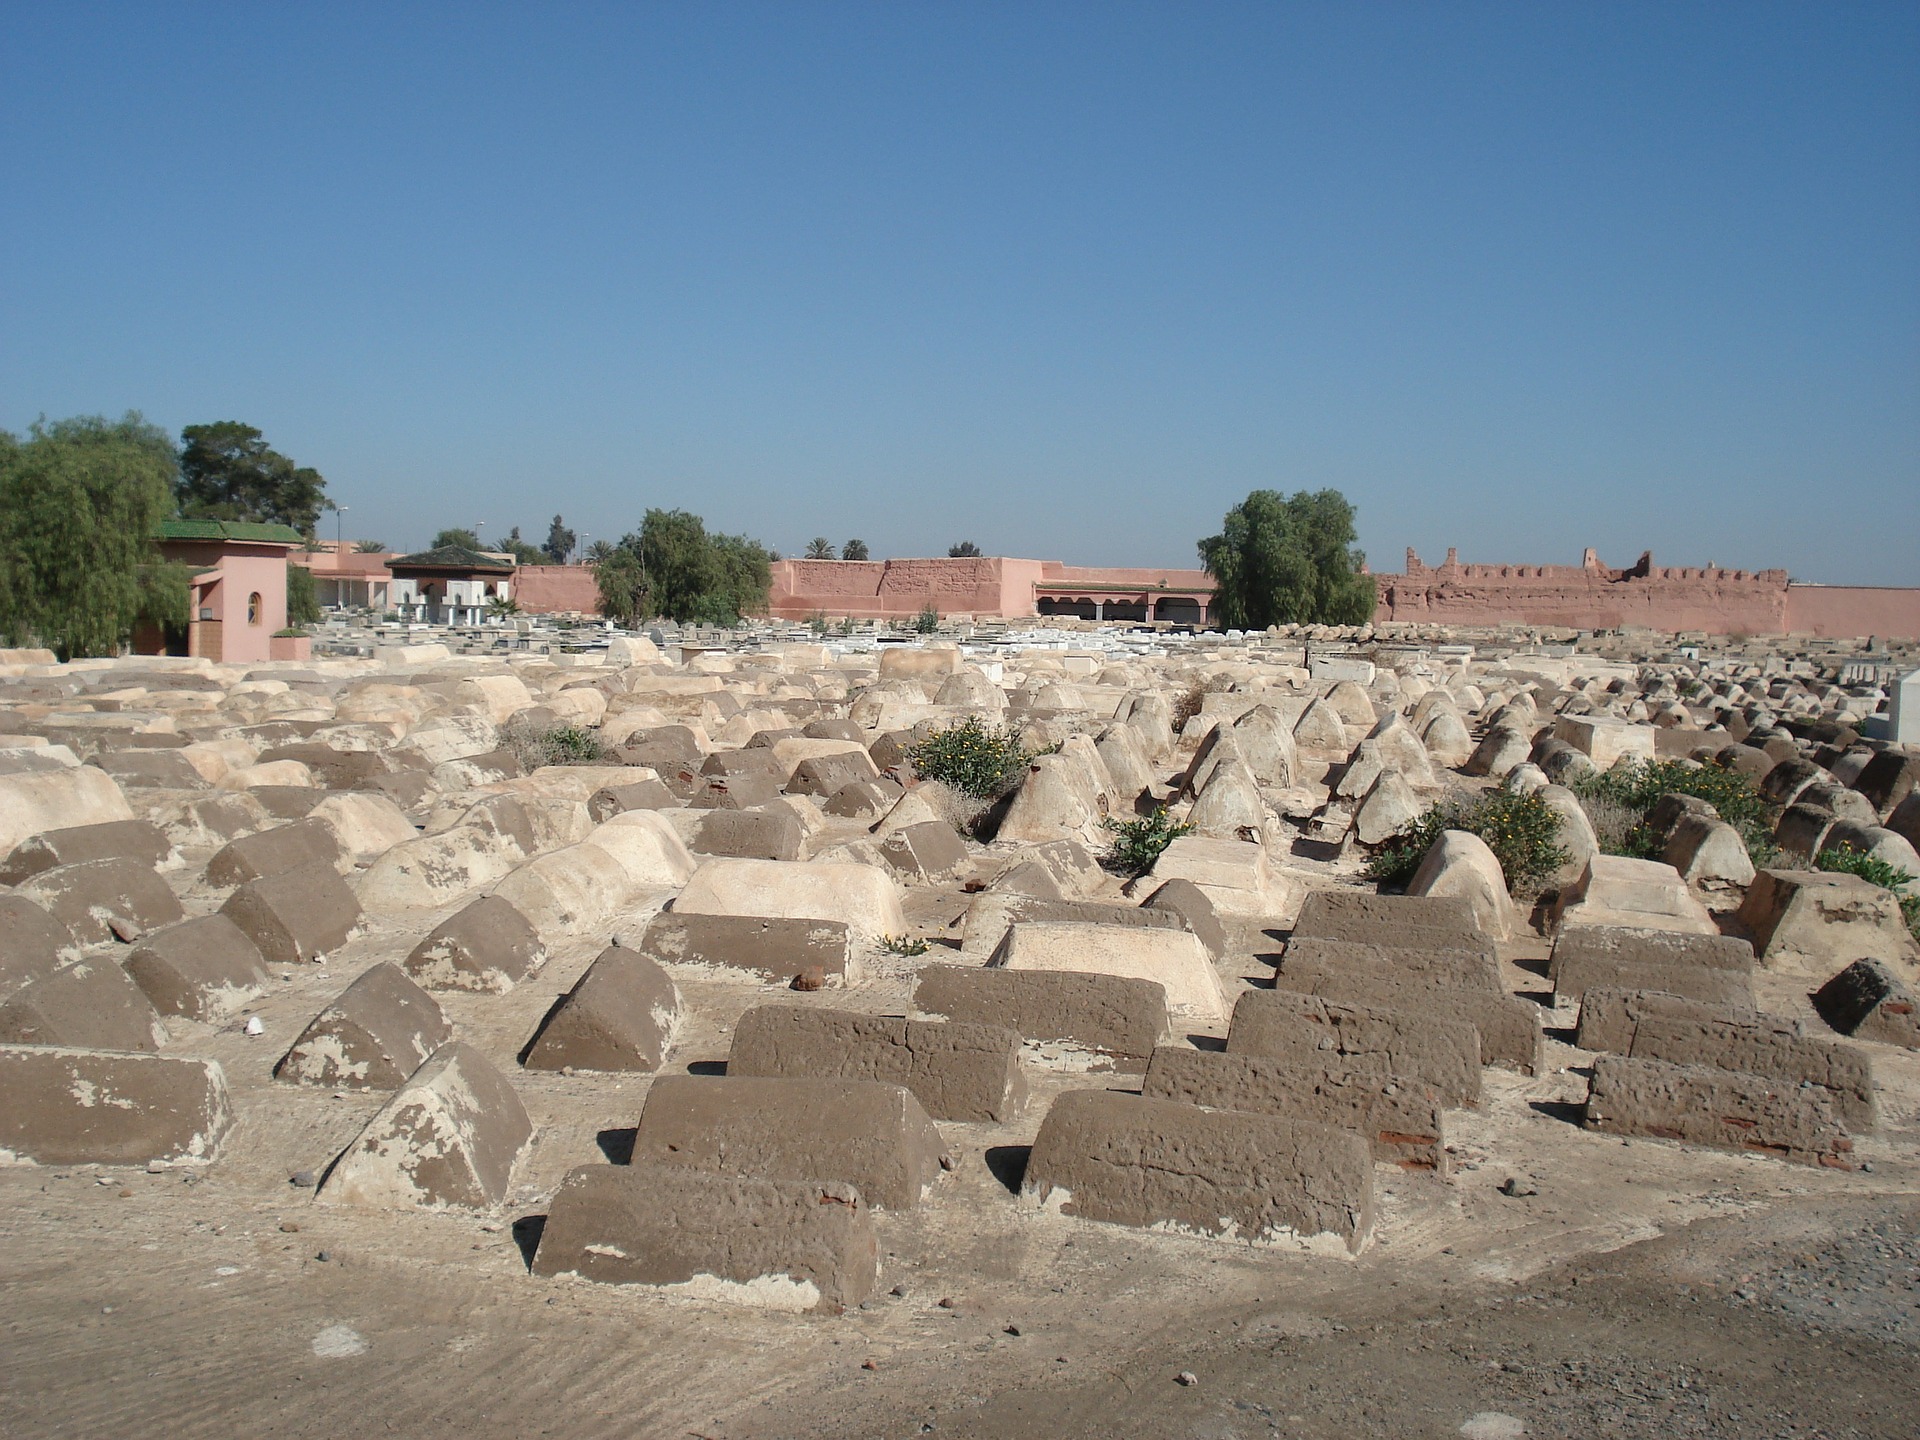 Cementeio judío en Marrakech